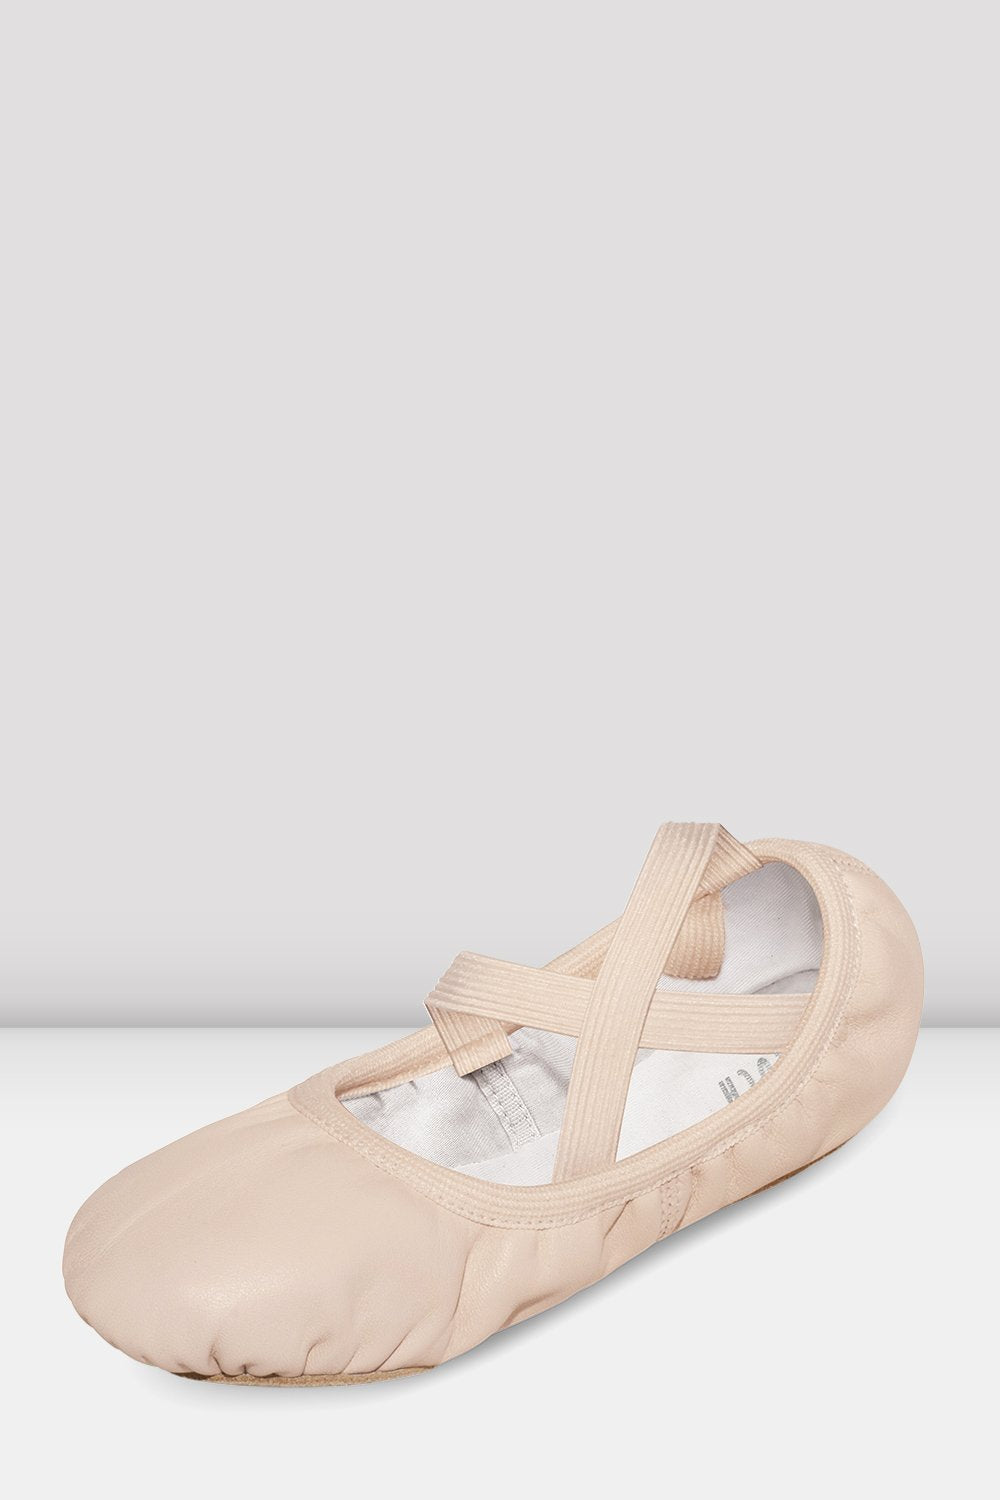 Adult Odette Ballet Shoe